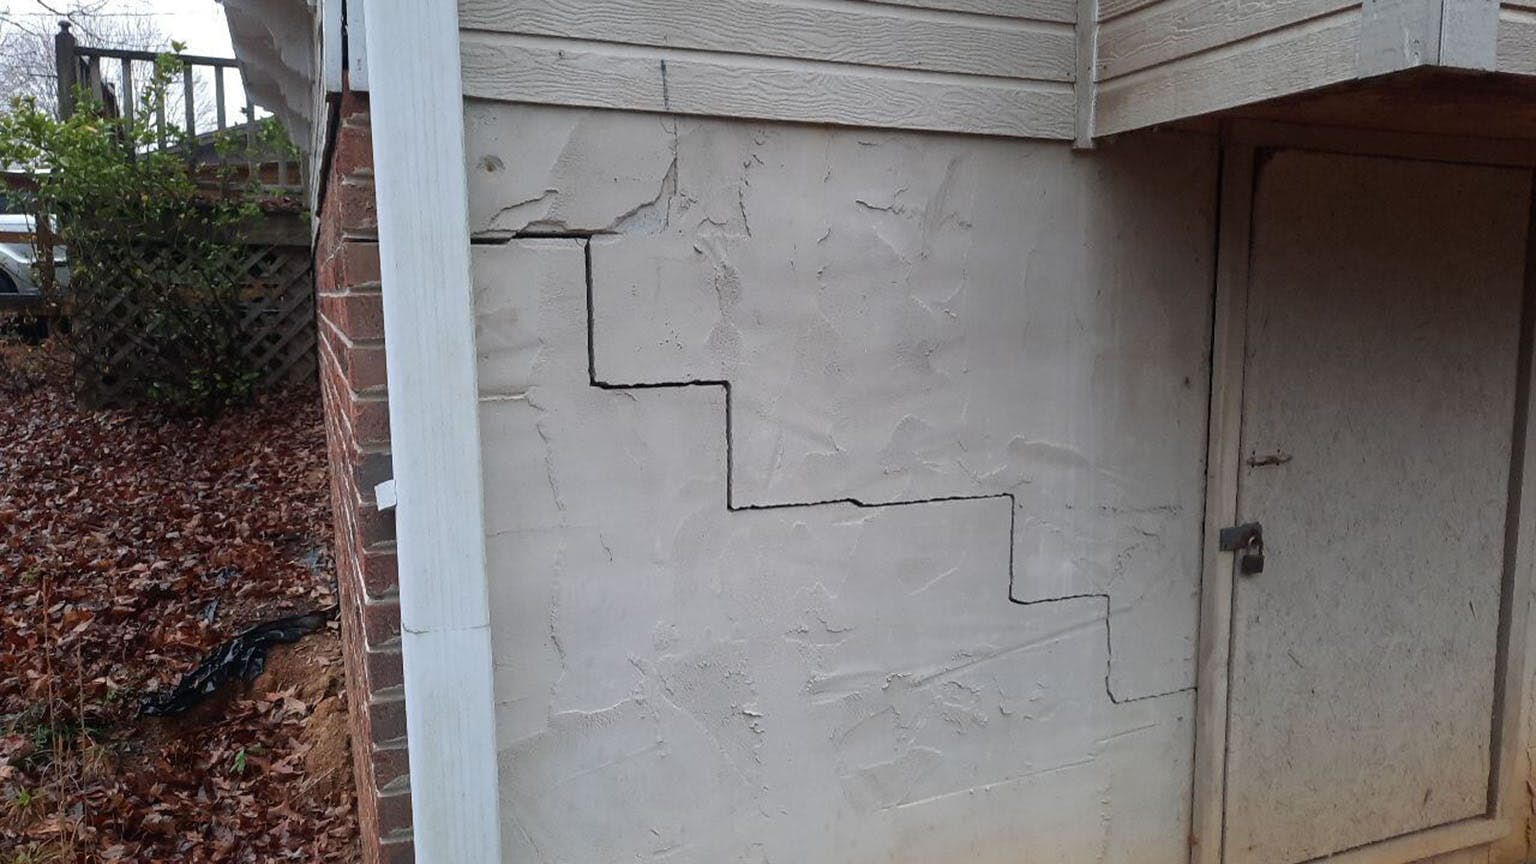 Stair-Step Cracks in Brick & Walls